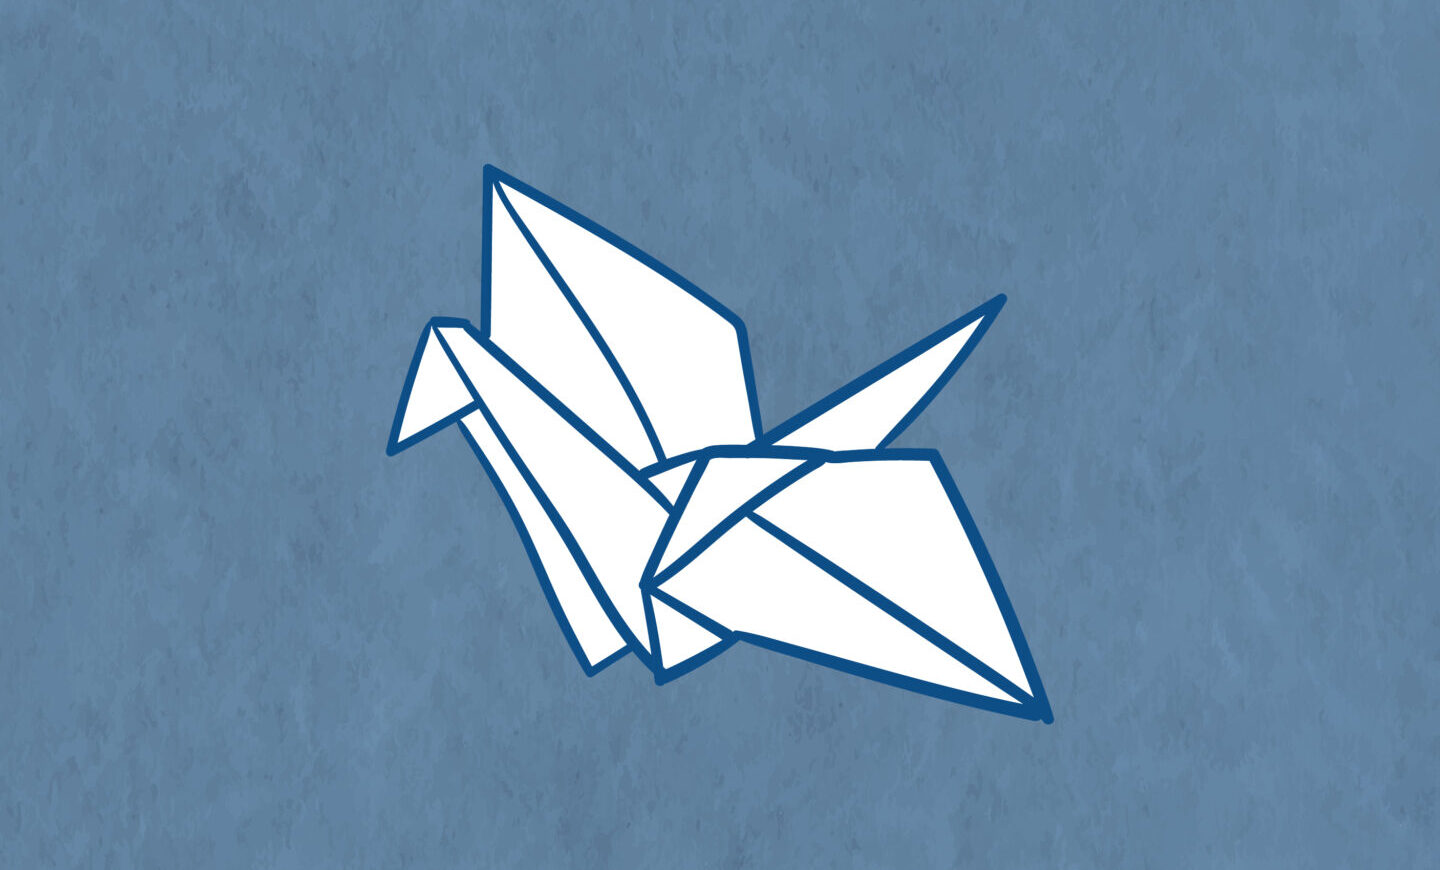 ブルーの背景に白抜きで鶴の折り紙がイラストされている様子。